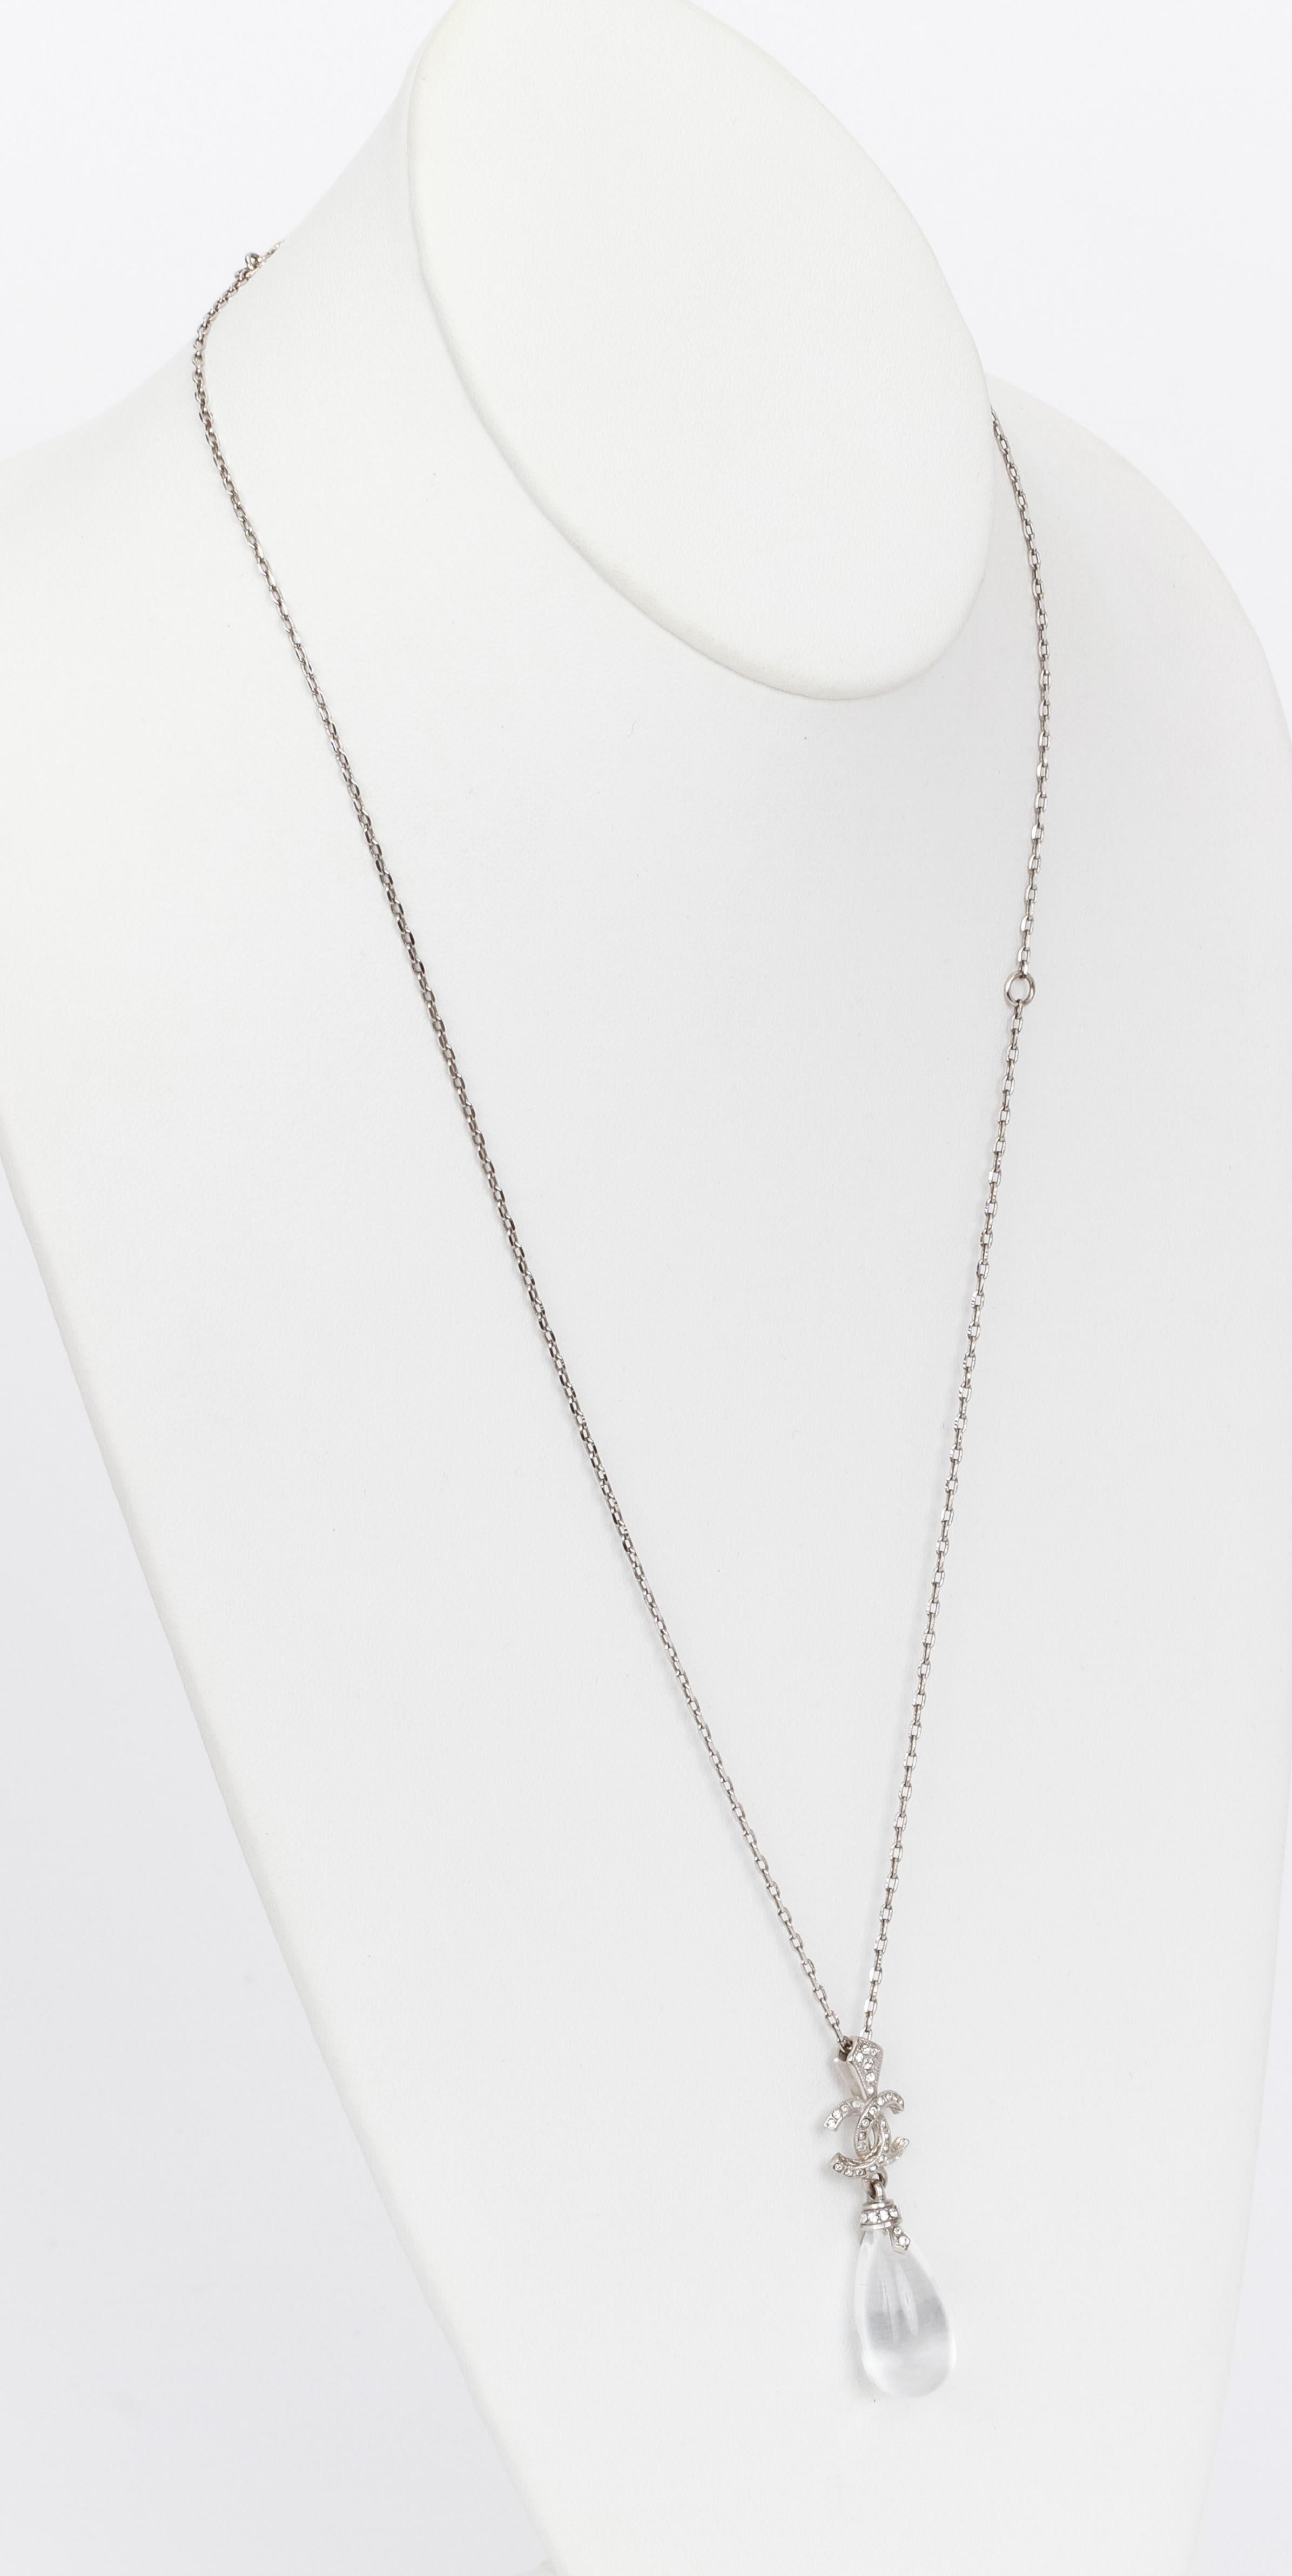 Chanel lucite drop necklace , L 23.5, pendant L 2”, comes with original box